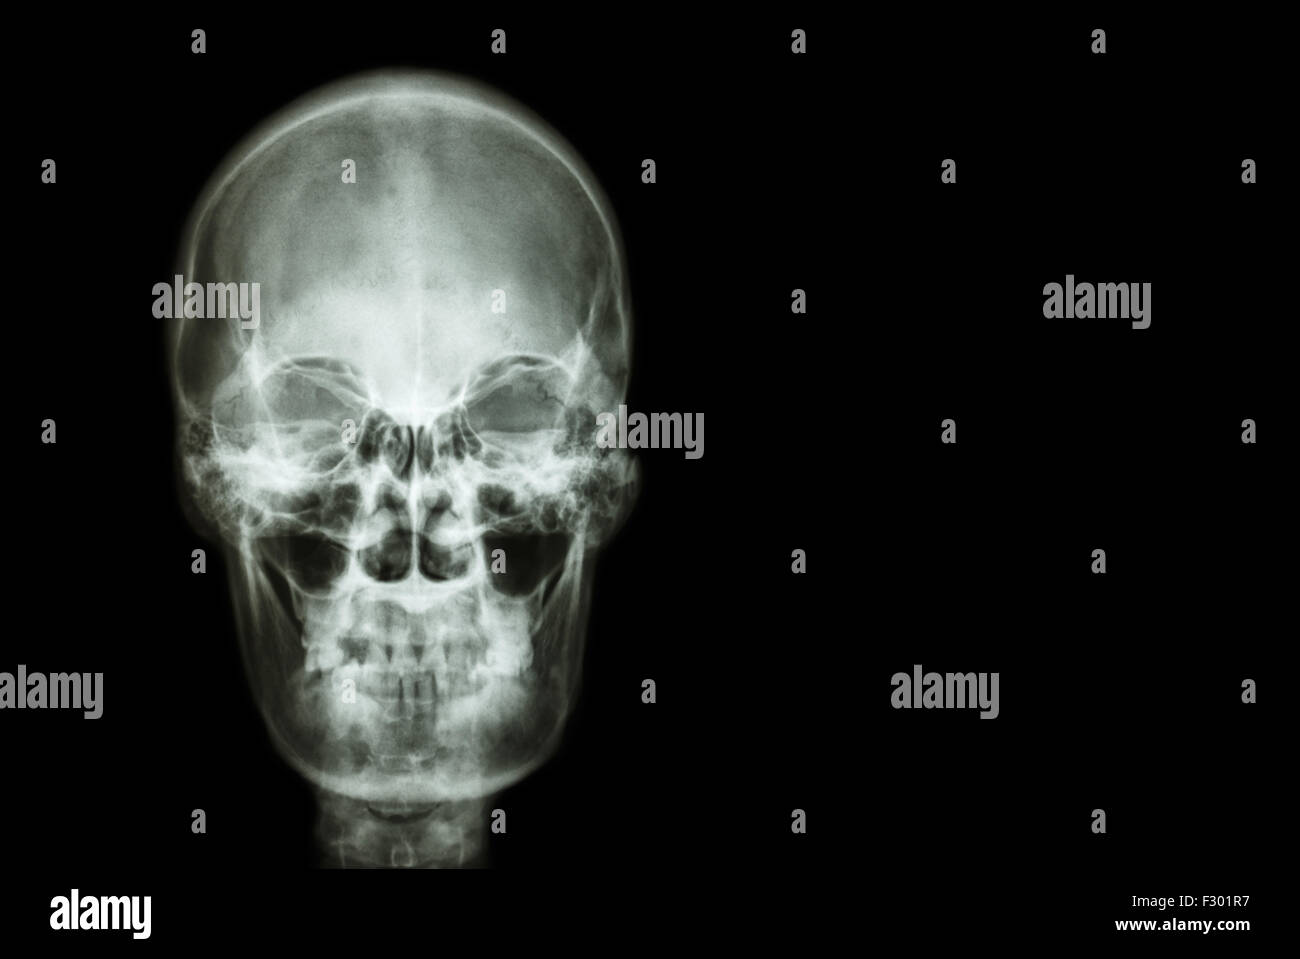 Film Röntgen Schädel des menschlichen und leeren Bereich auf der rechten Seite (Medizin, Wissenschaft und Gesundheitswesen Konzept und Hintergrund) Stockfoto